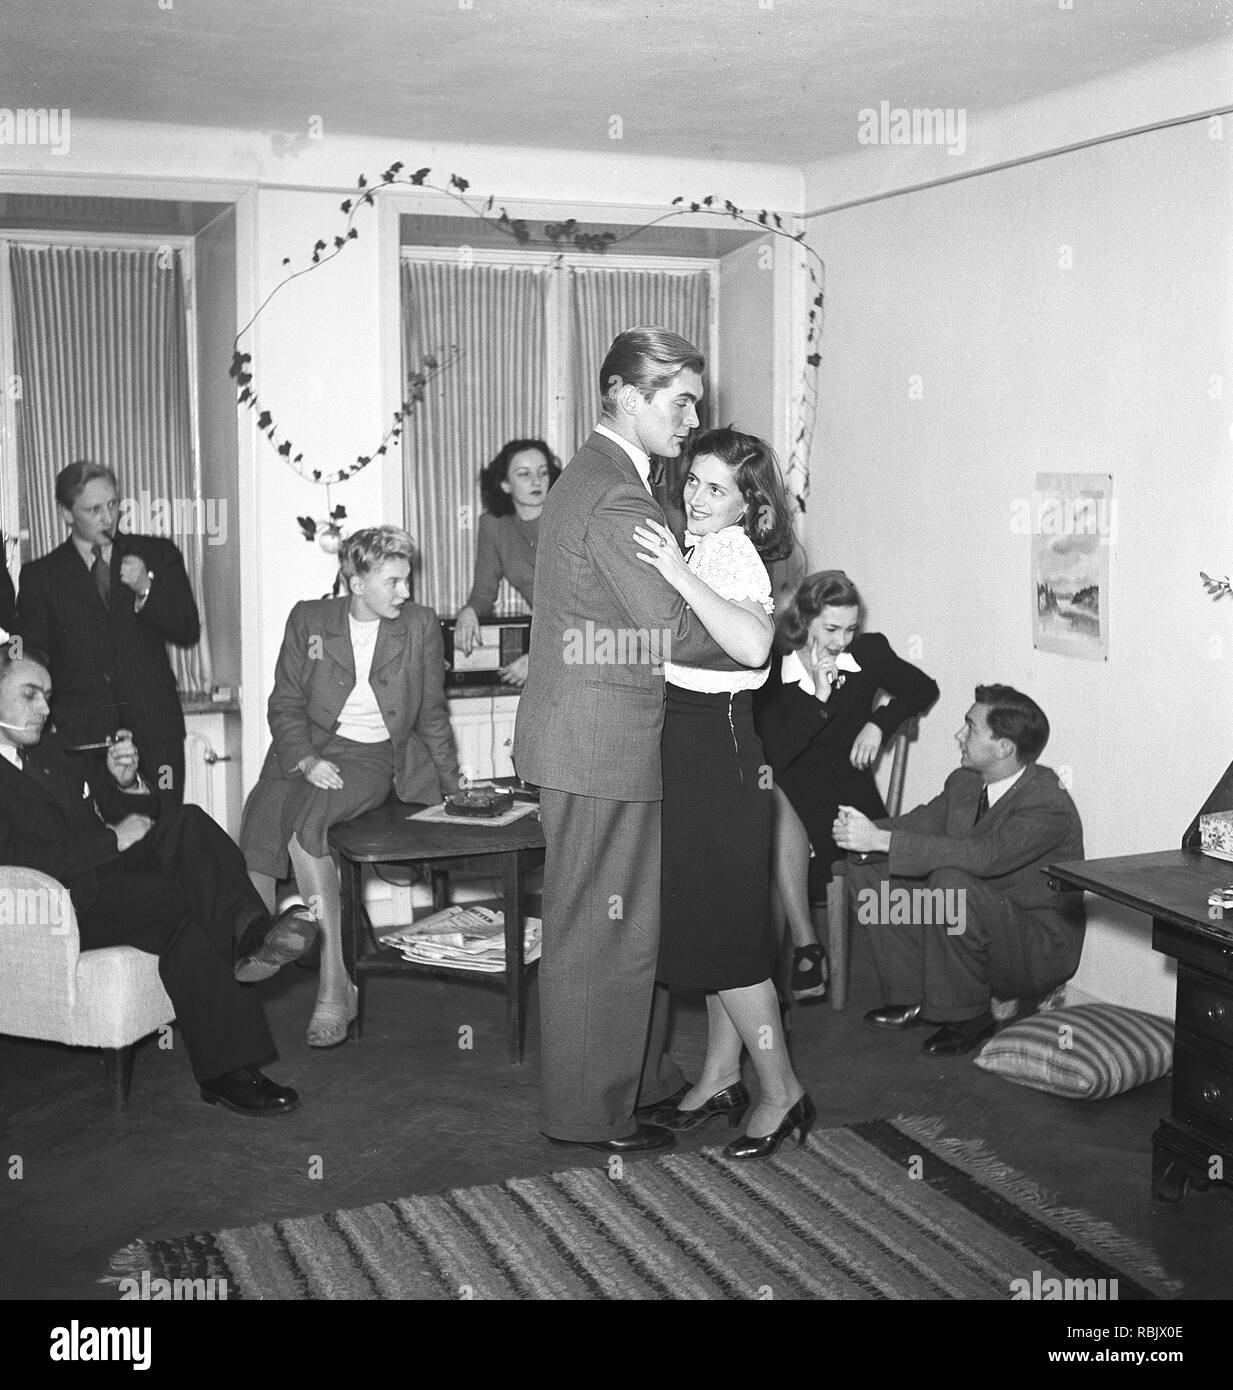 Tanz in den 1940er Jahren. Ein junger Menschen auf einer Party tanzen ist, während ihre Freunde sitzen. Foto Kristoffersson Ref L4-3. Schweden 1944 Stockfoto